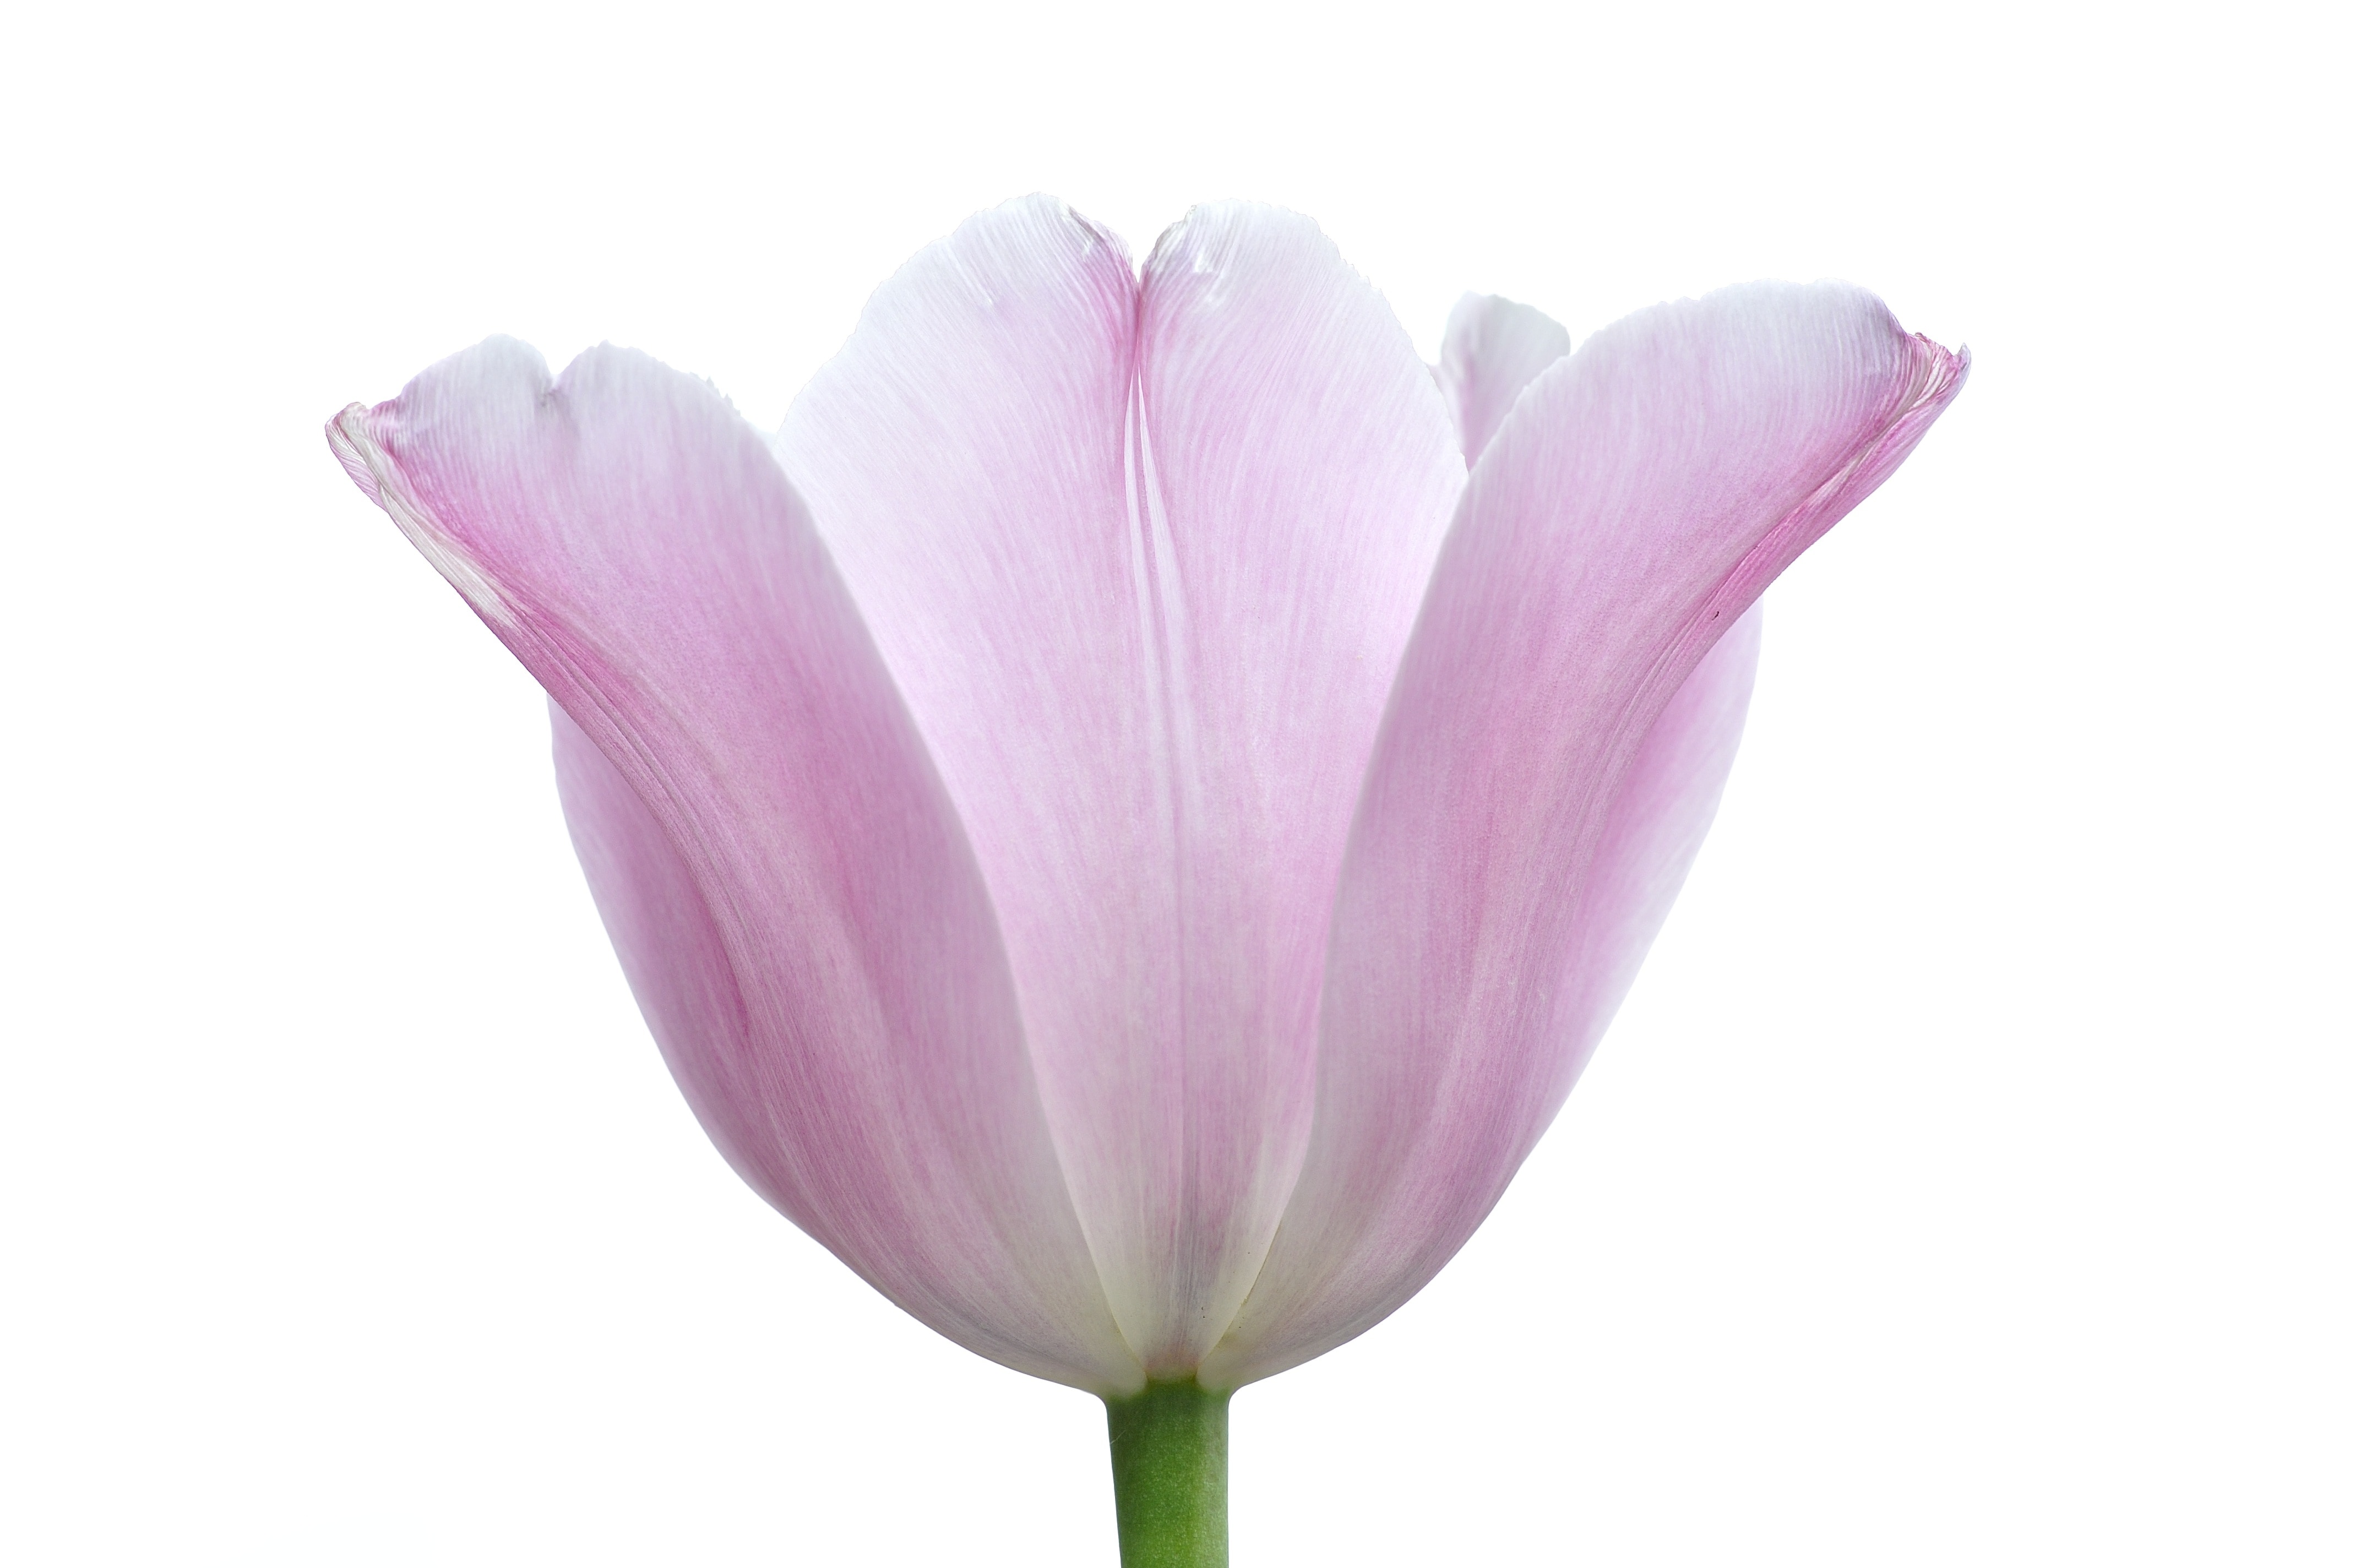 Tender, Plant, Flower, Tulip, Pink, flower, pink color